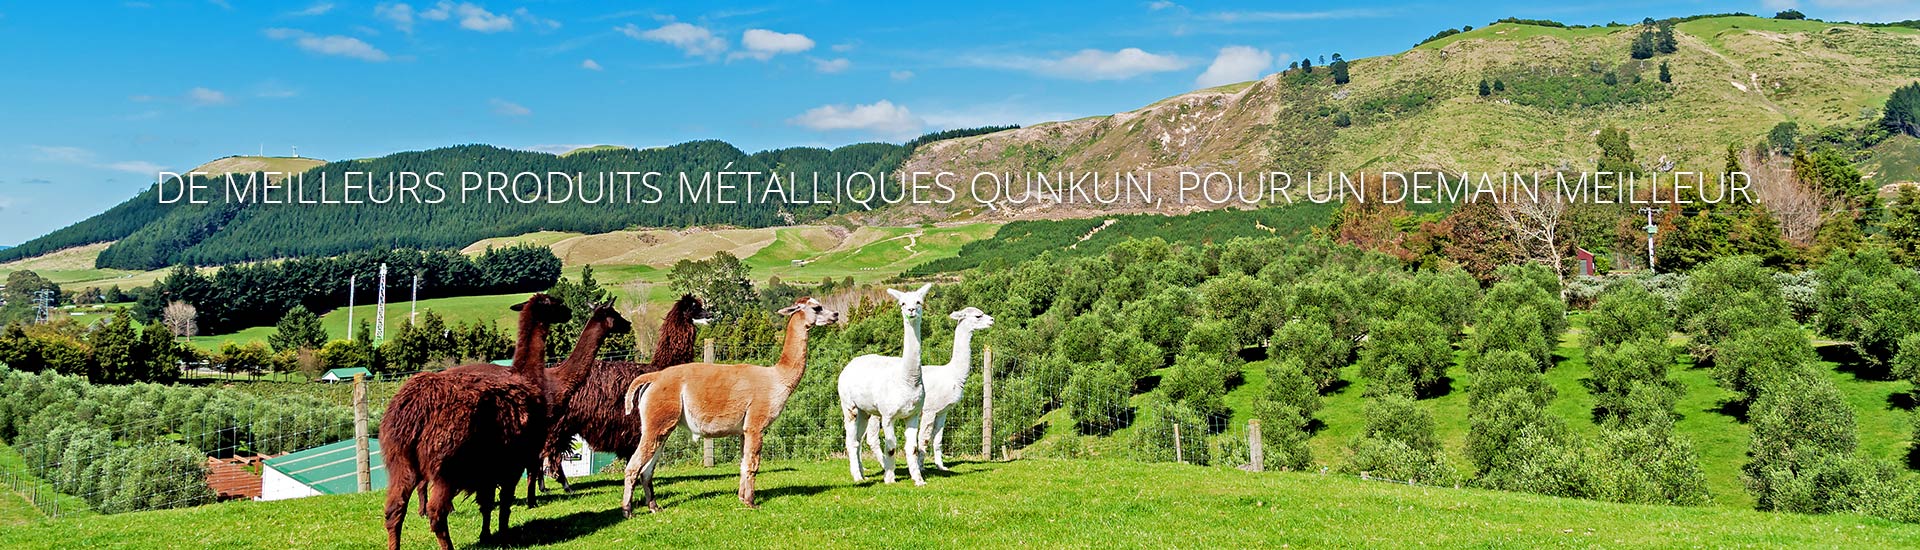 Qunkun Metal Product Co., Ltd.